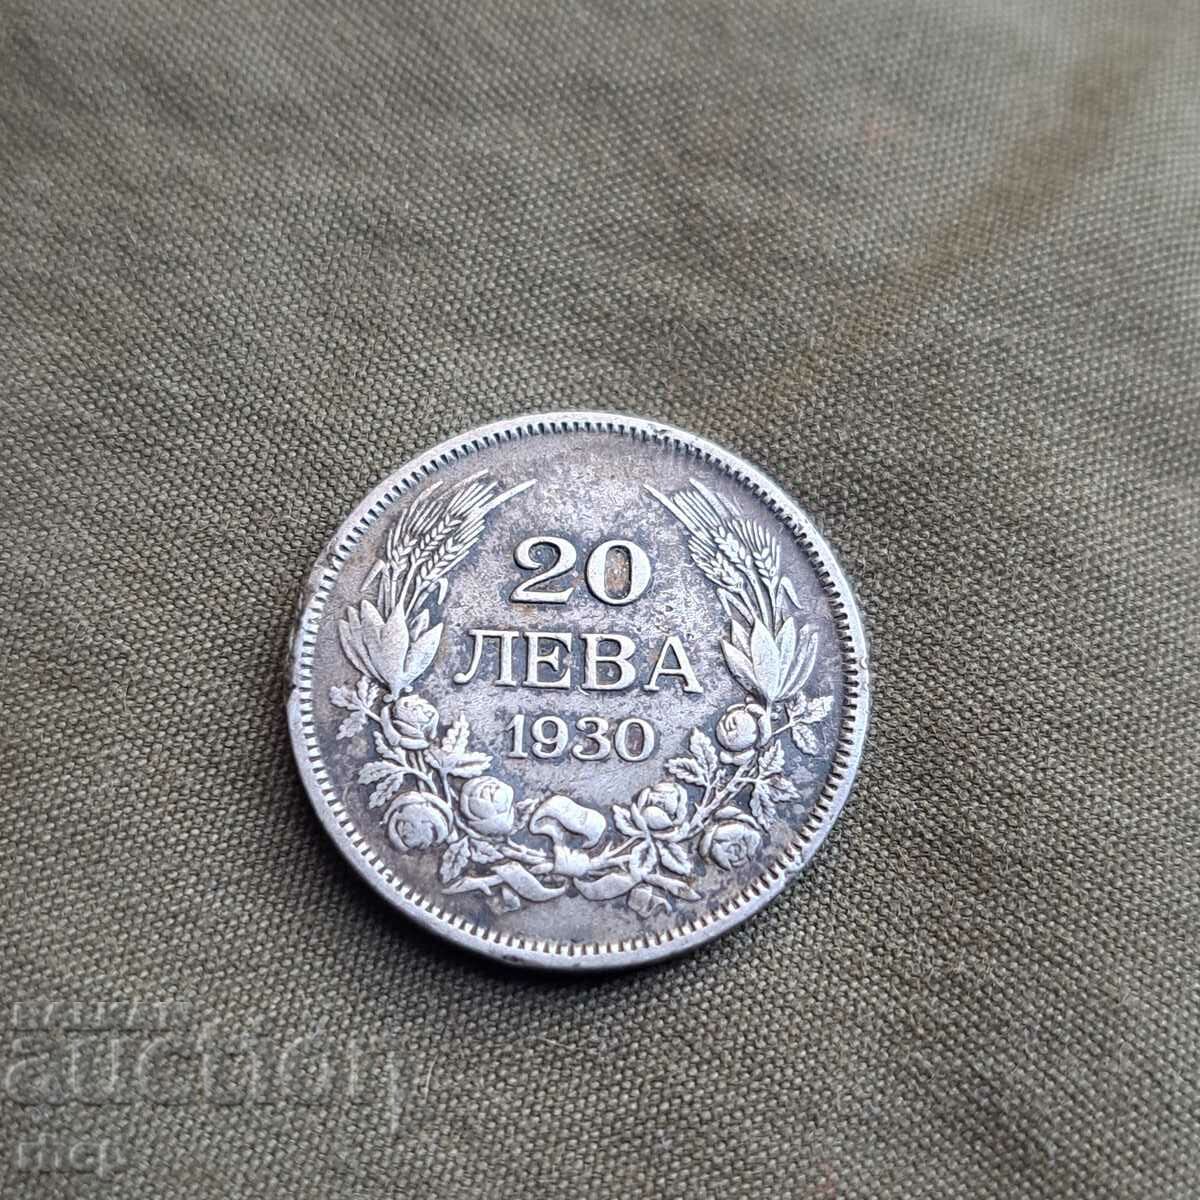 20 лева 1930 монета